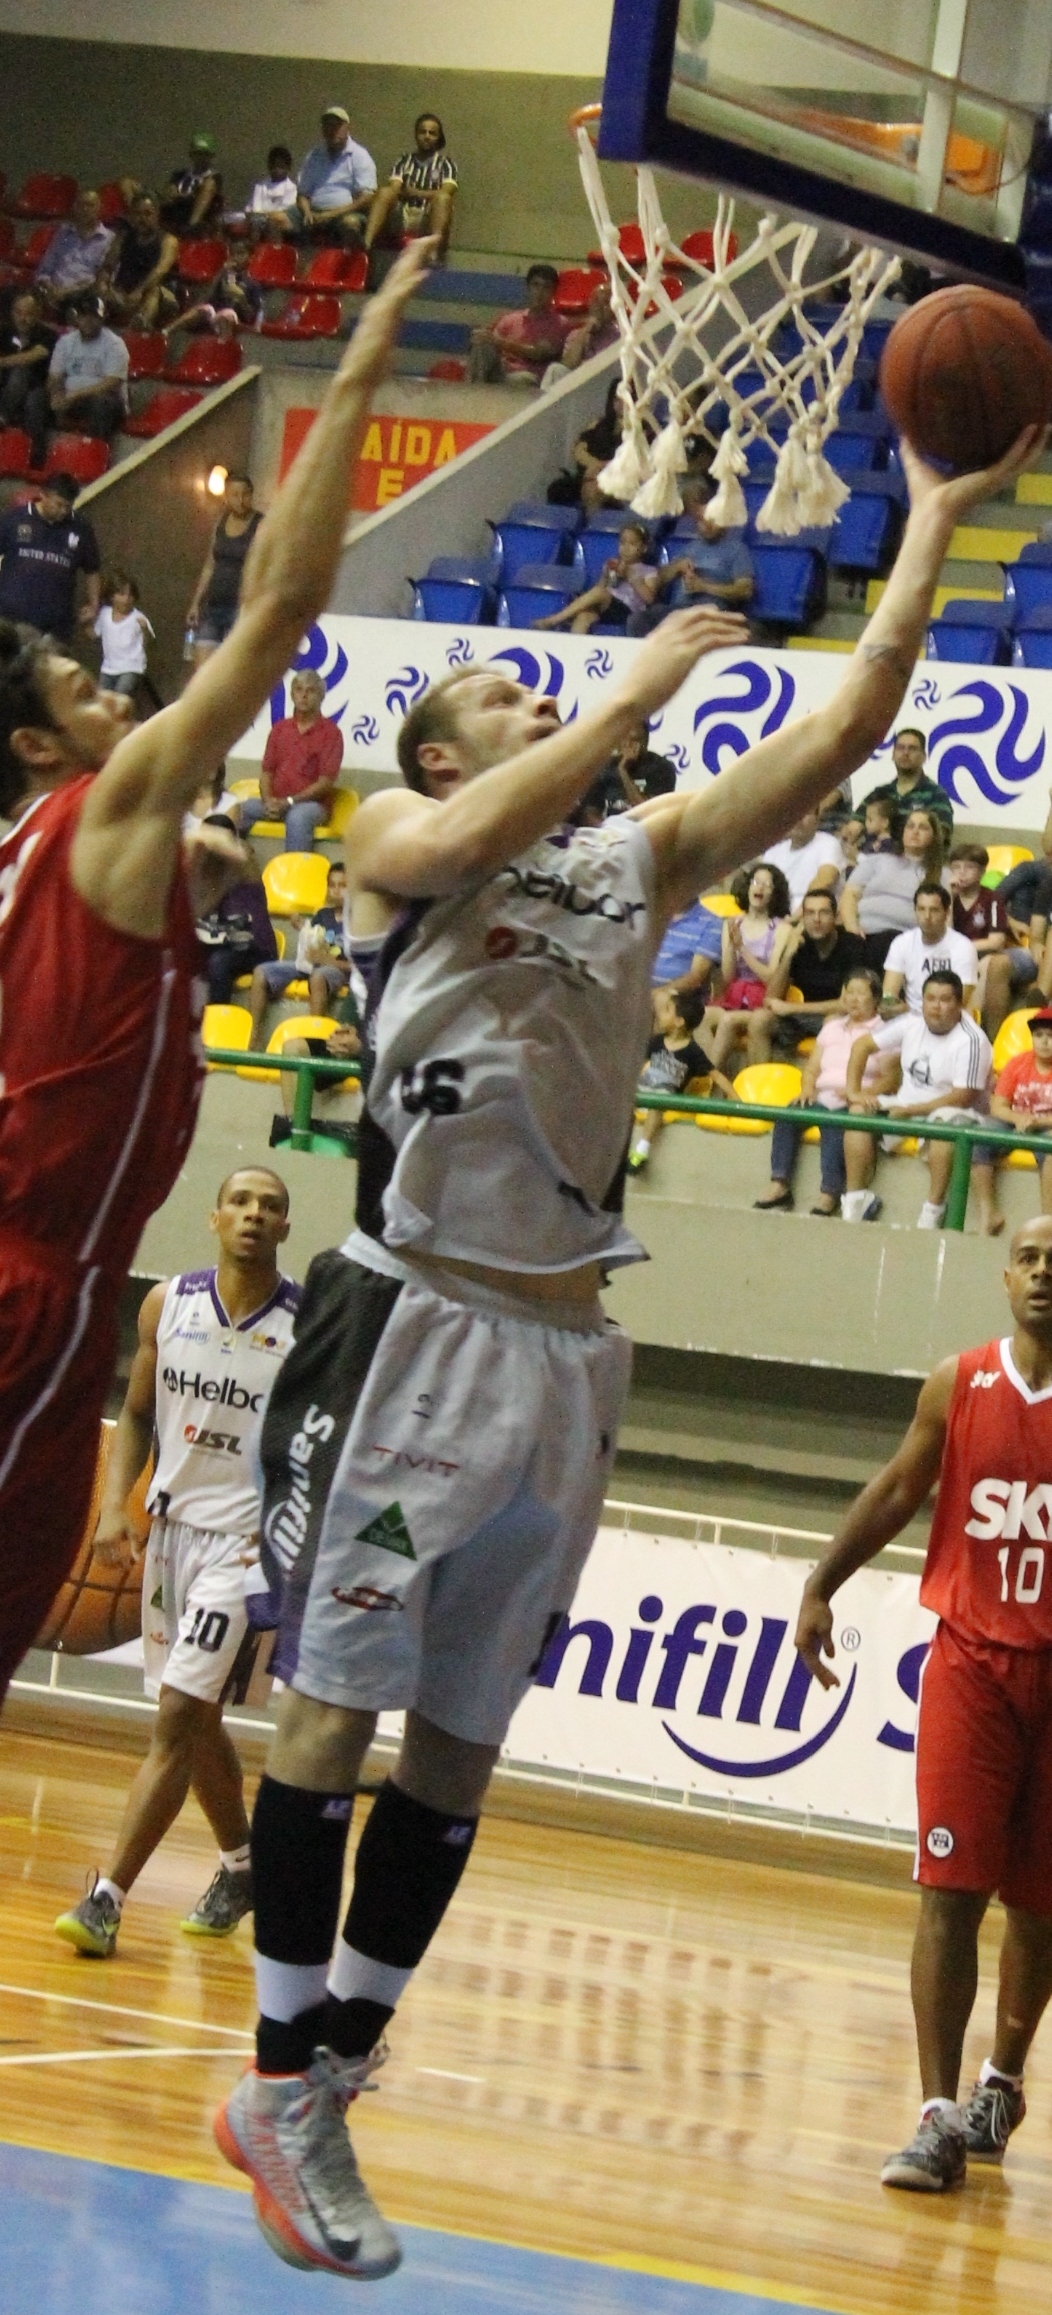 Reboteiro do NBB6, Daniel Alemão igualou o recorde de rebotes das temporadas regulares do NBB (Guilherme Peixinho/Divulgação)